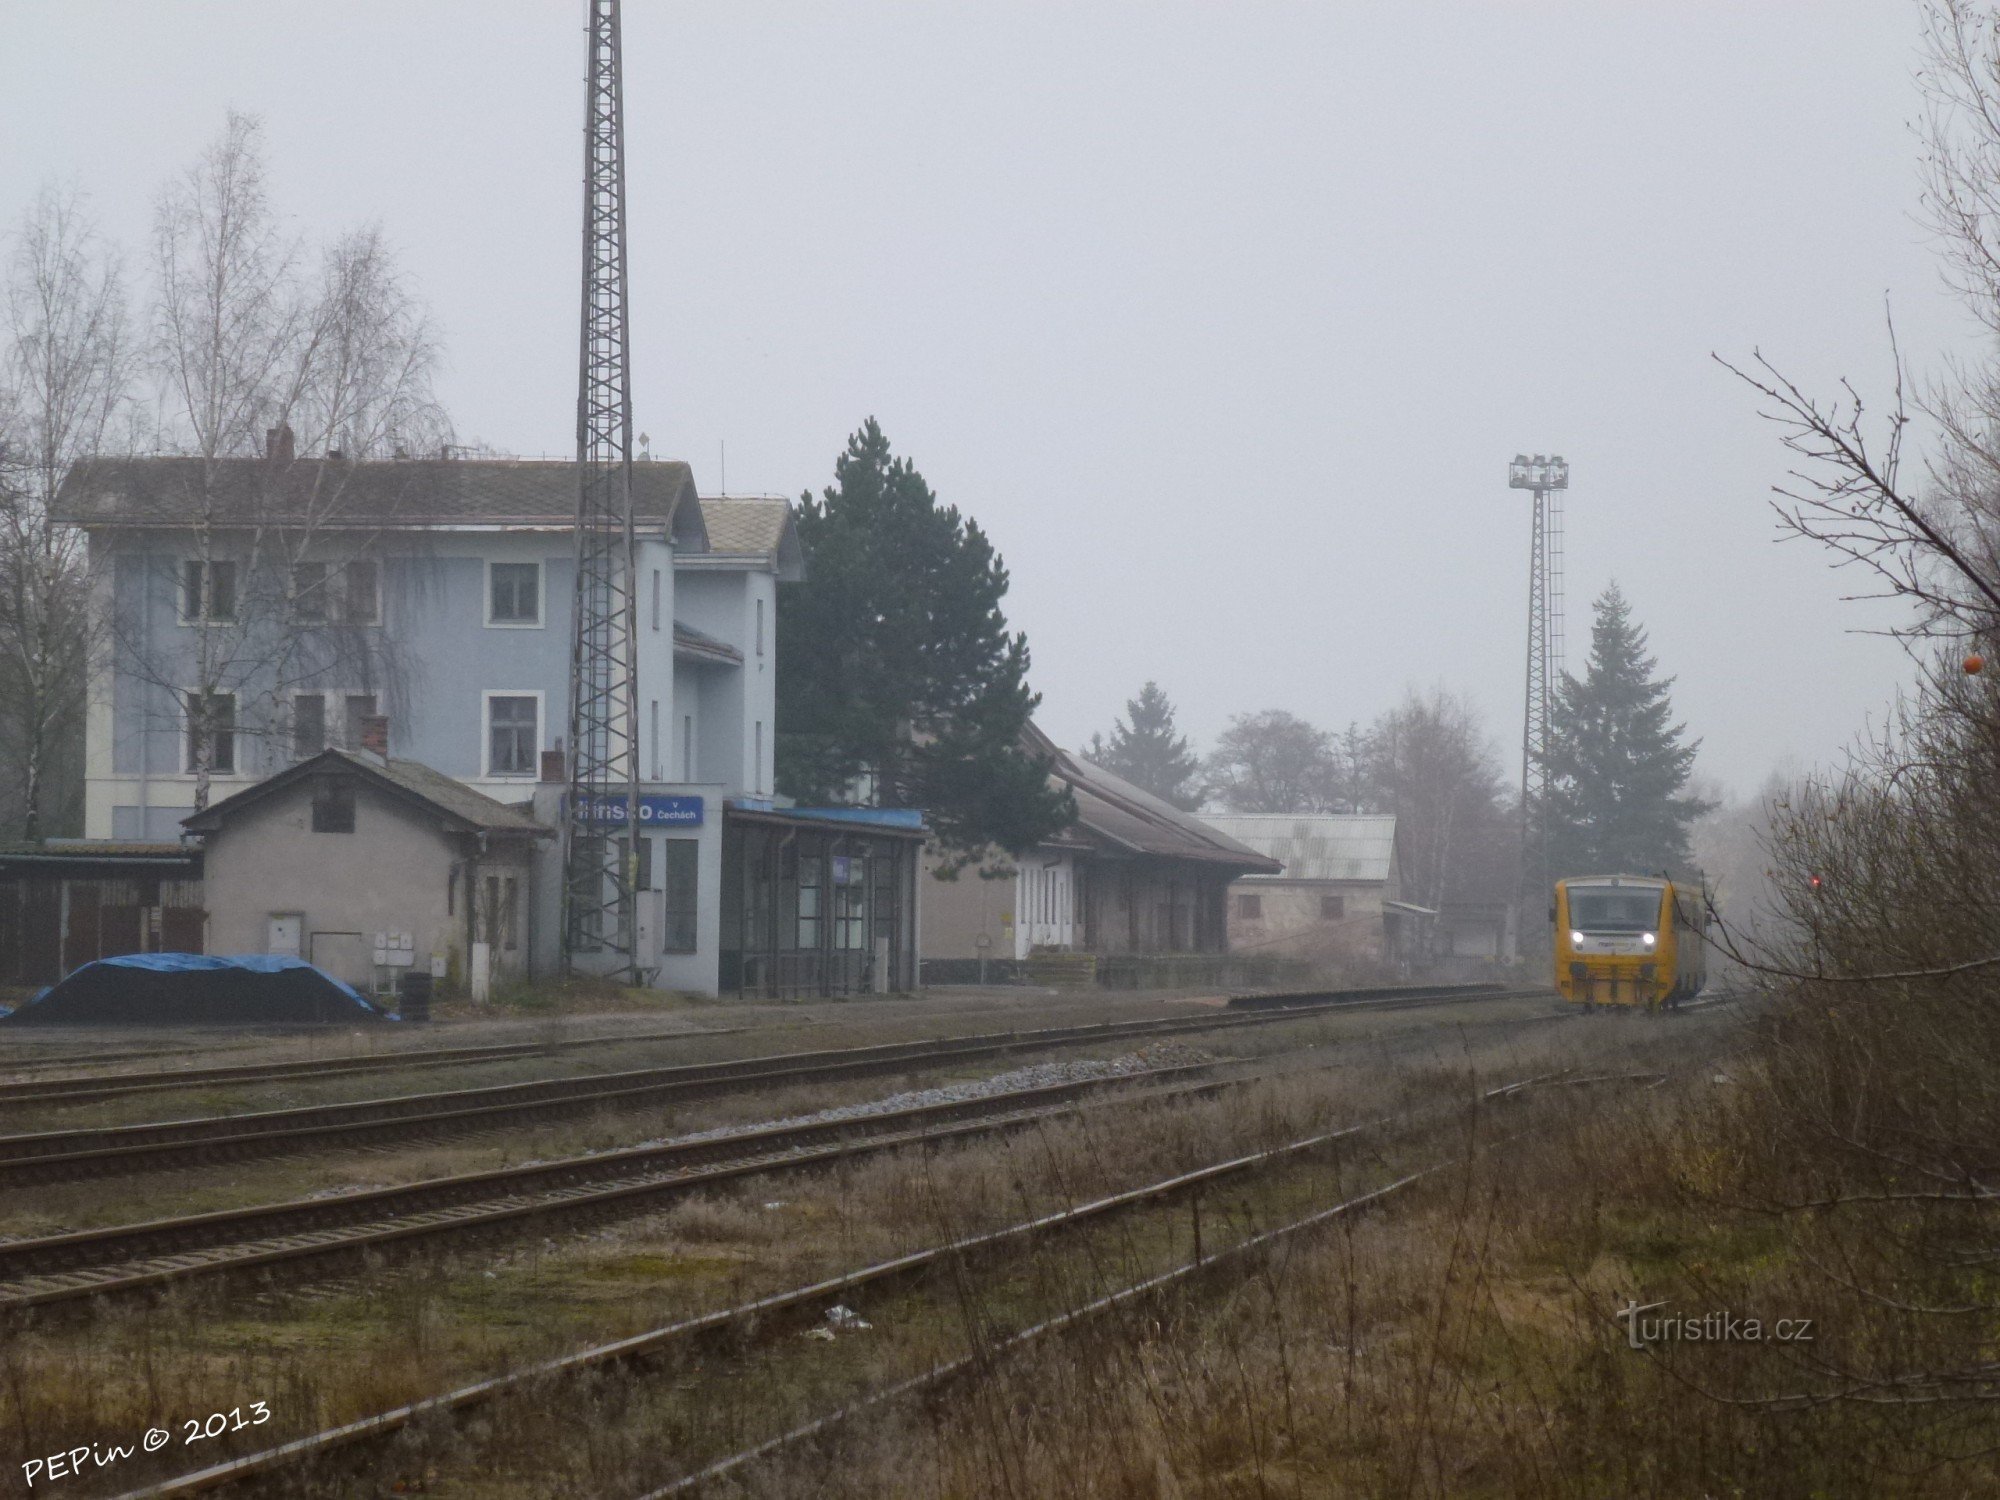 Hlinsko na Boêmia, estação ferroviária, pátio de trilha